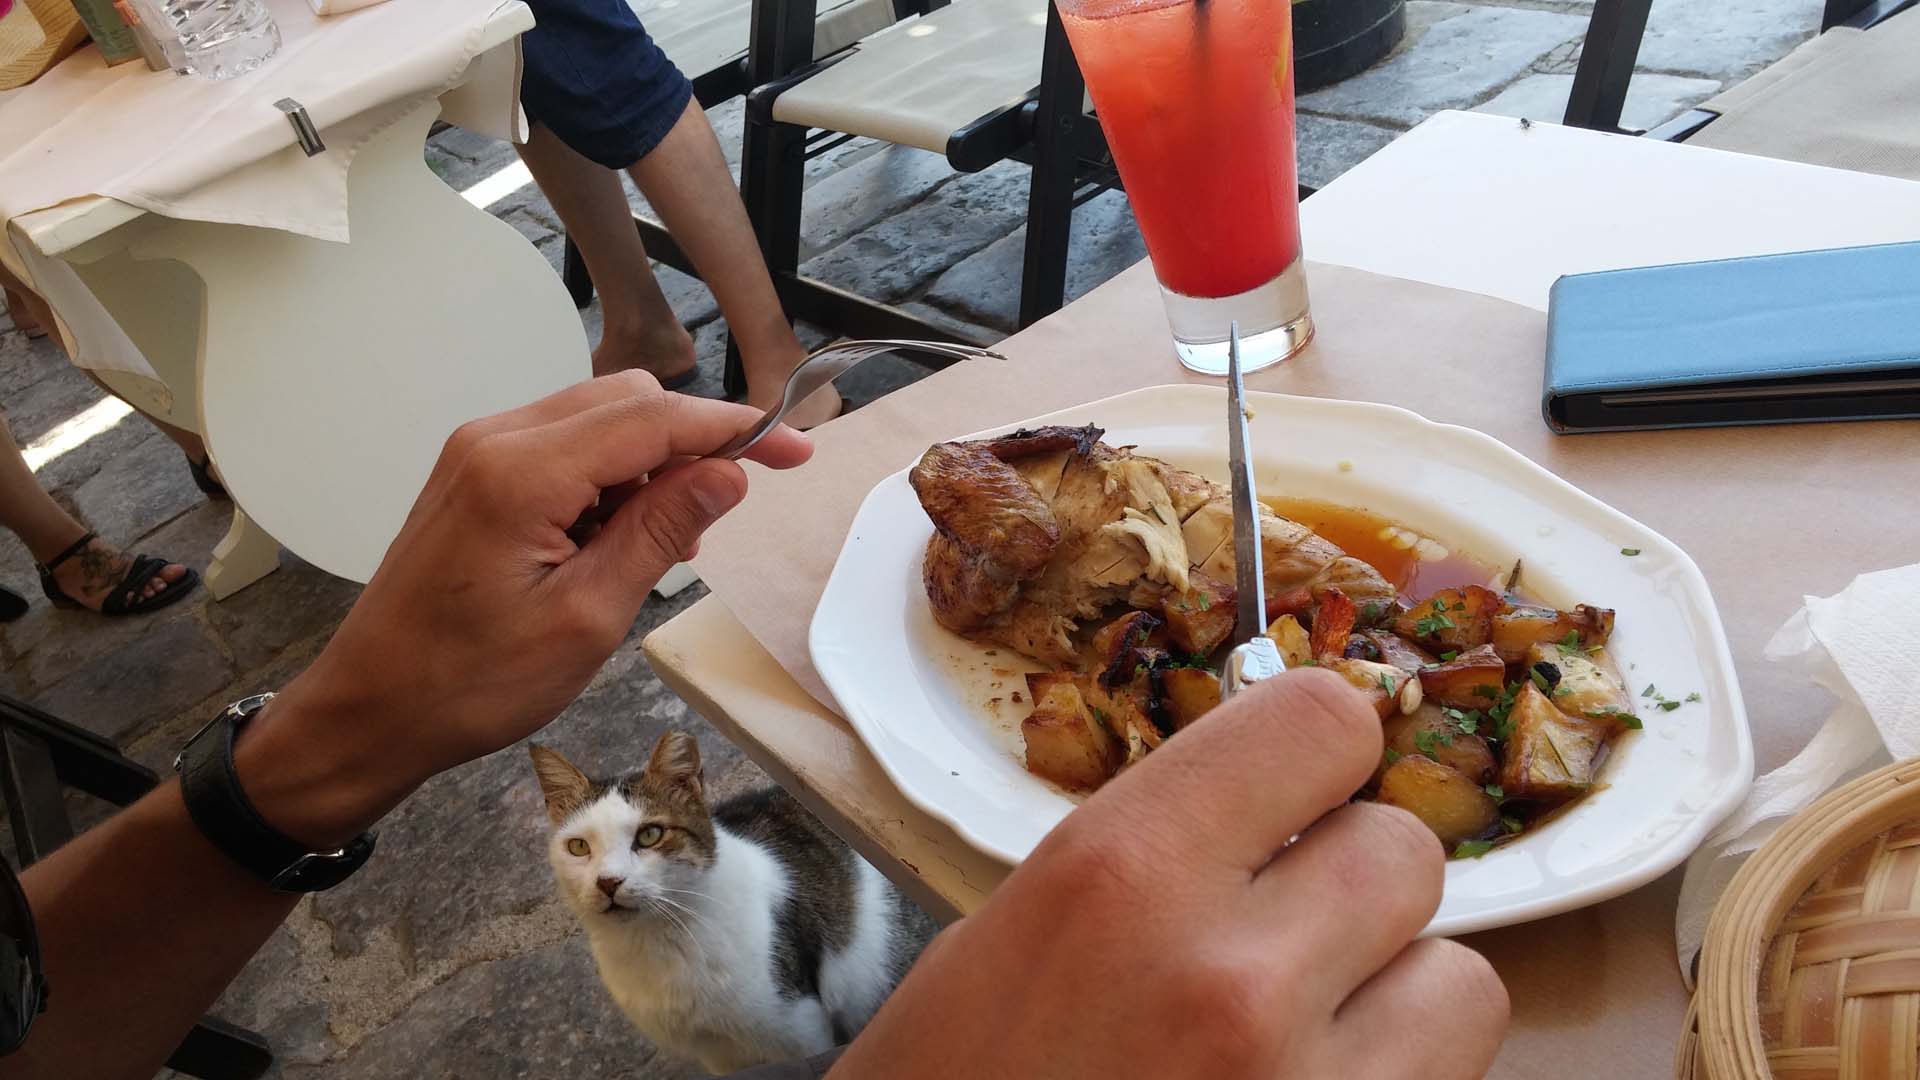 Uomo mangia pranzo pollo sull'isola di Idra circondati da gatti affamati che lo guardano